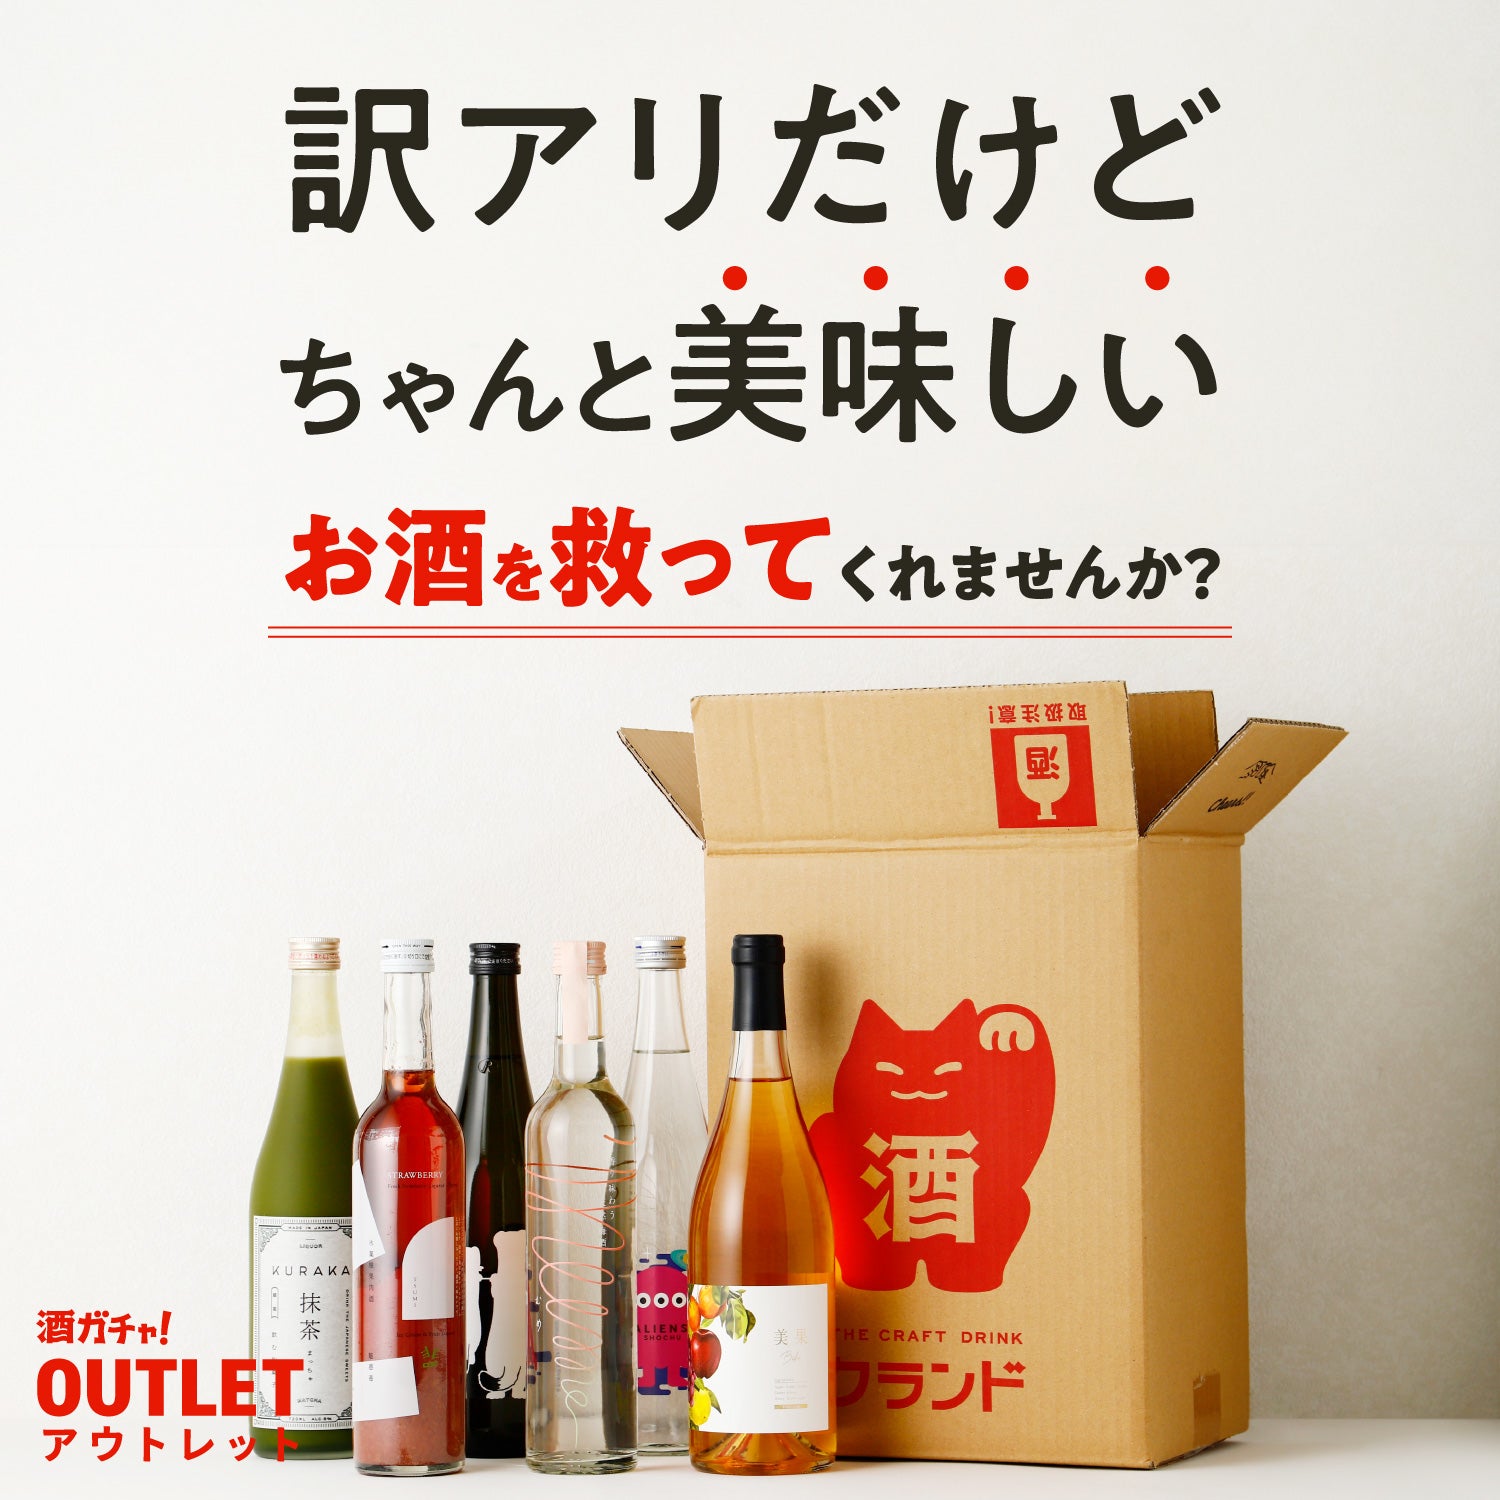 3本】≪LR以上1本確定≫酒ガチャアウトレット | のセット | 酒・日本酒